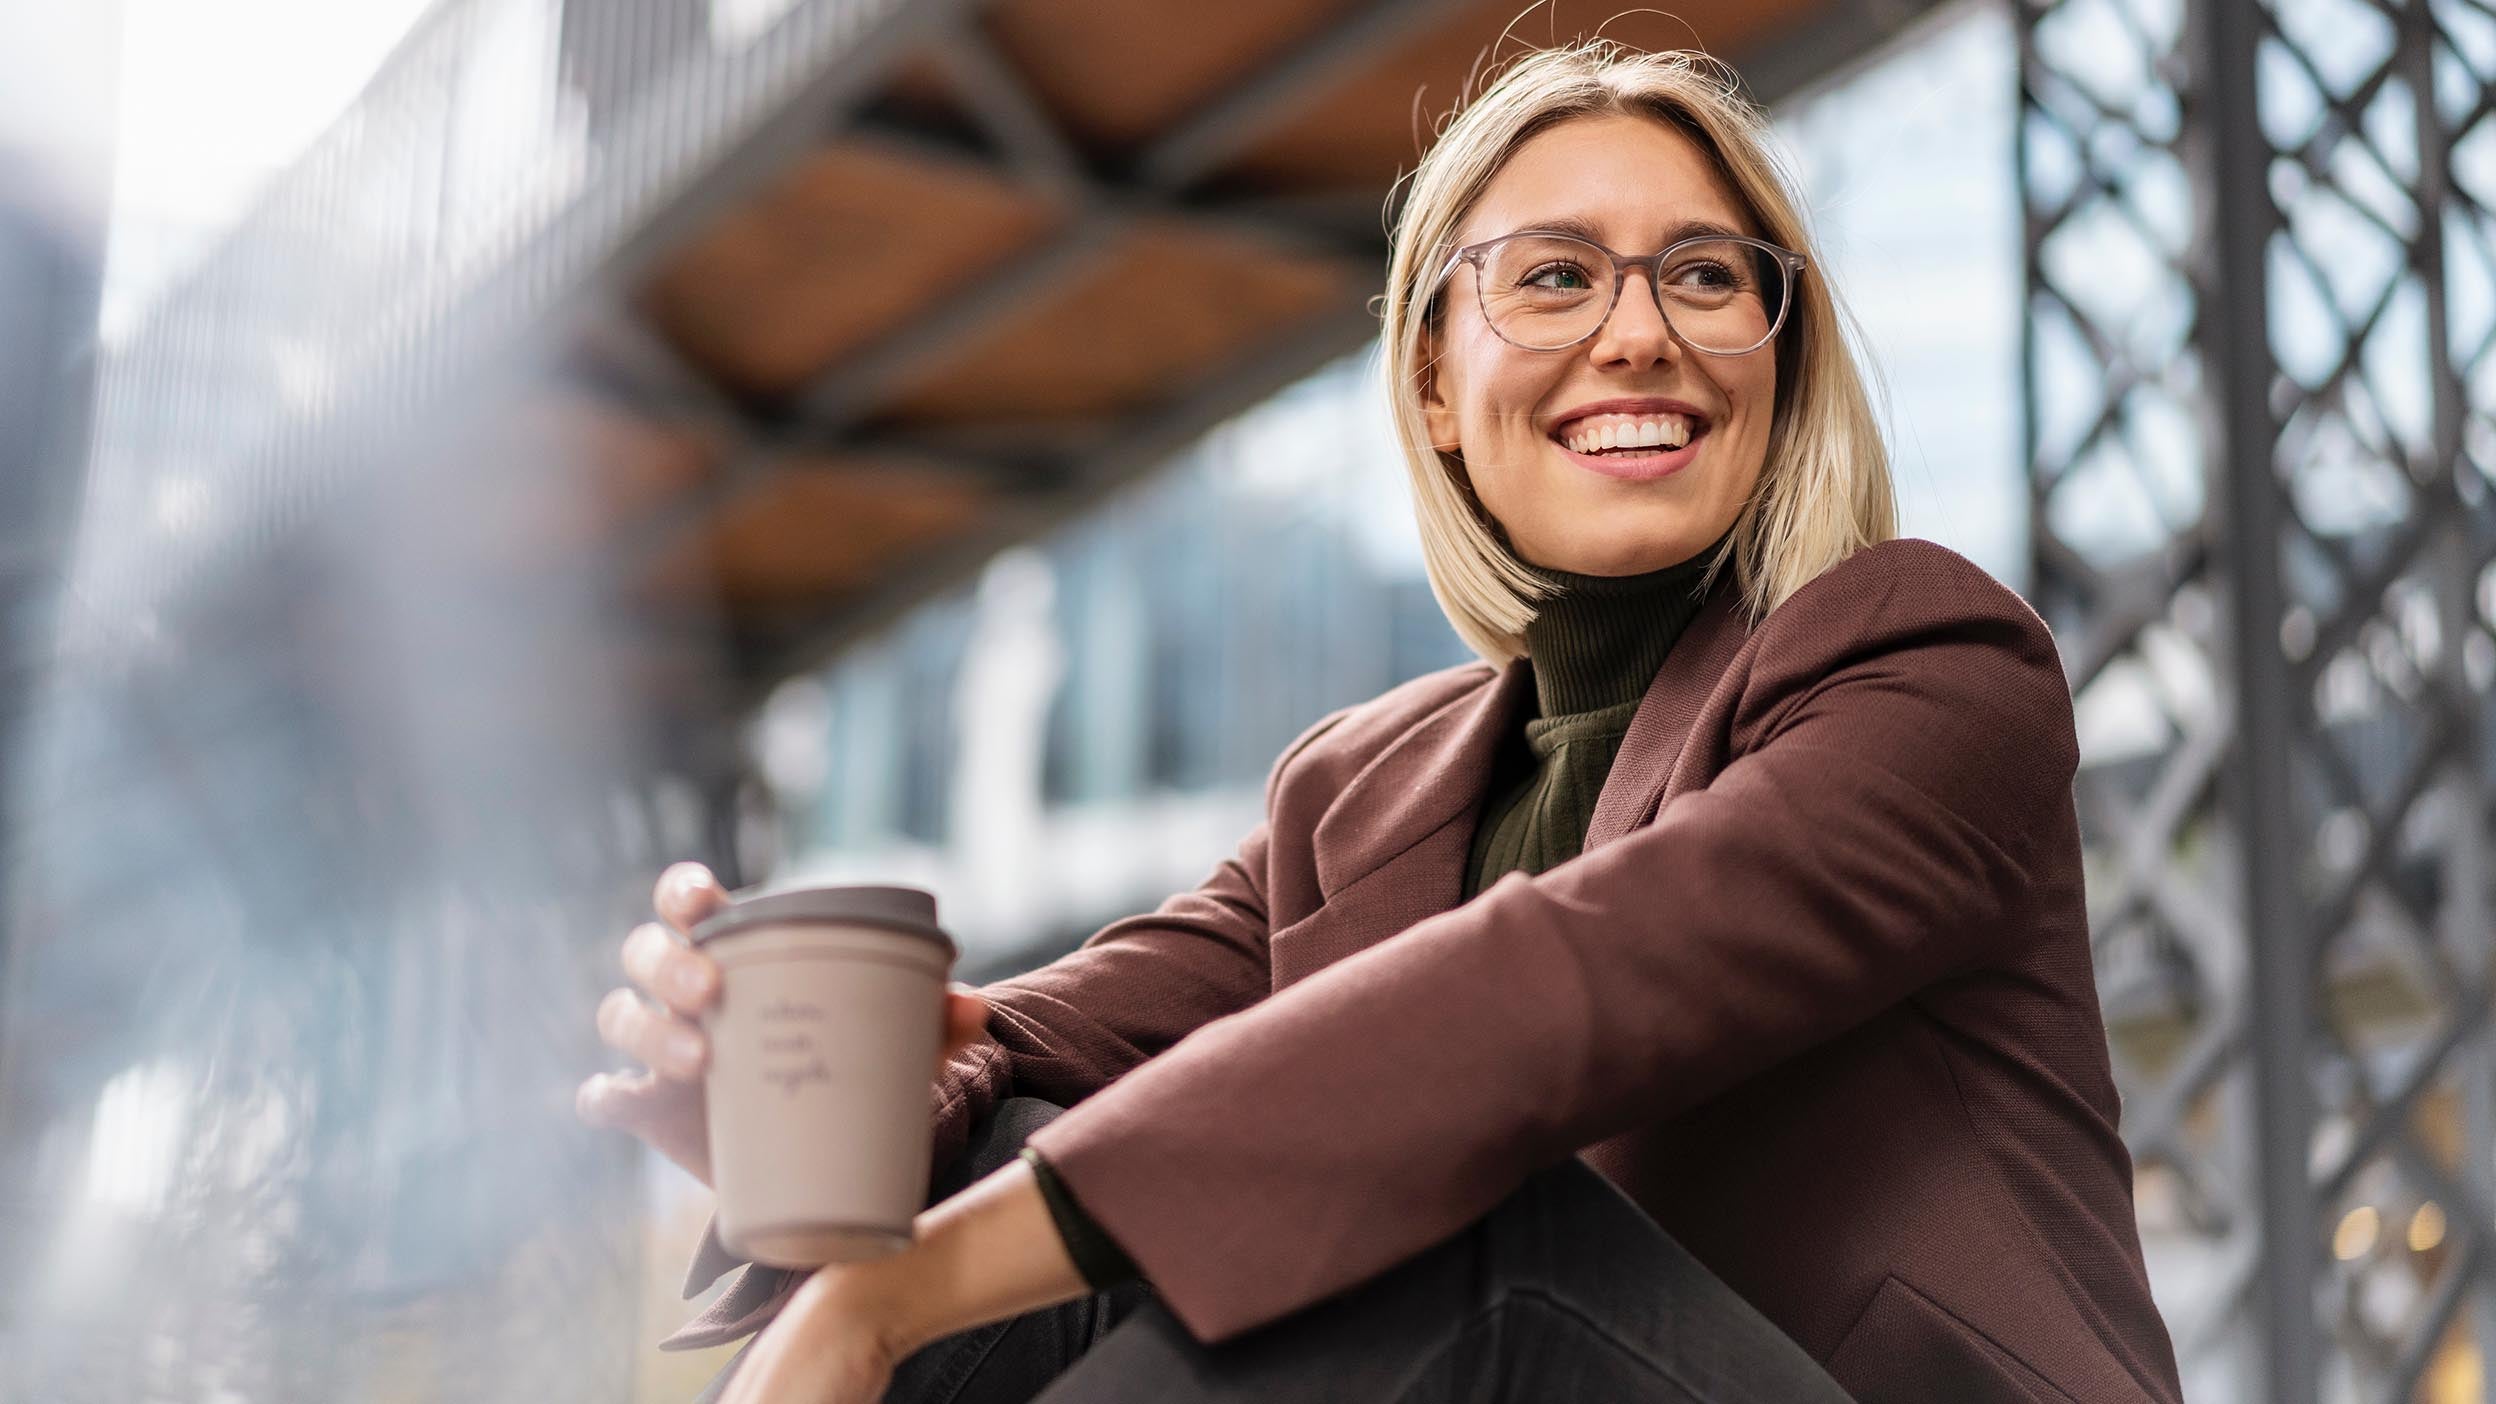 Een jongedame die geniet van een kopje koffie, staat symbool voor de manier waarop innovatie floreert op onverwachte plekken, inclusief enkele van de onderliggende beleggingen van Invesco QQQ ETF.